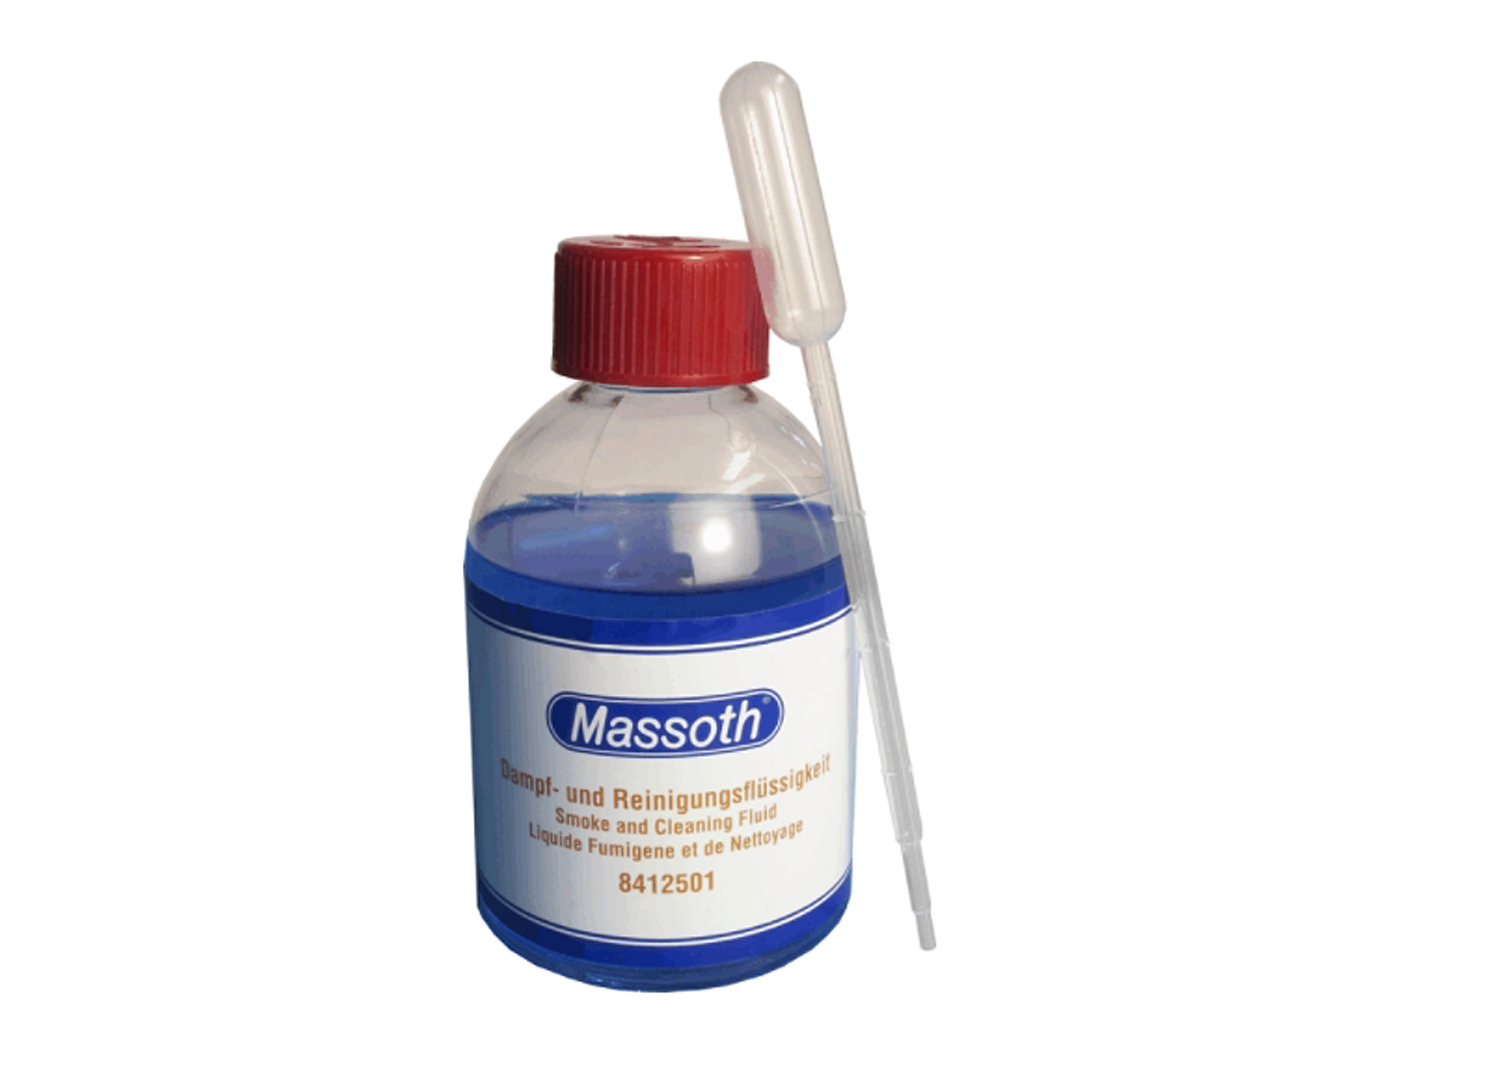 Massoth 8412501 Dampf- und Reinigungsflüssigkeit 